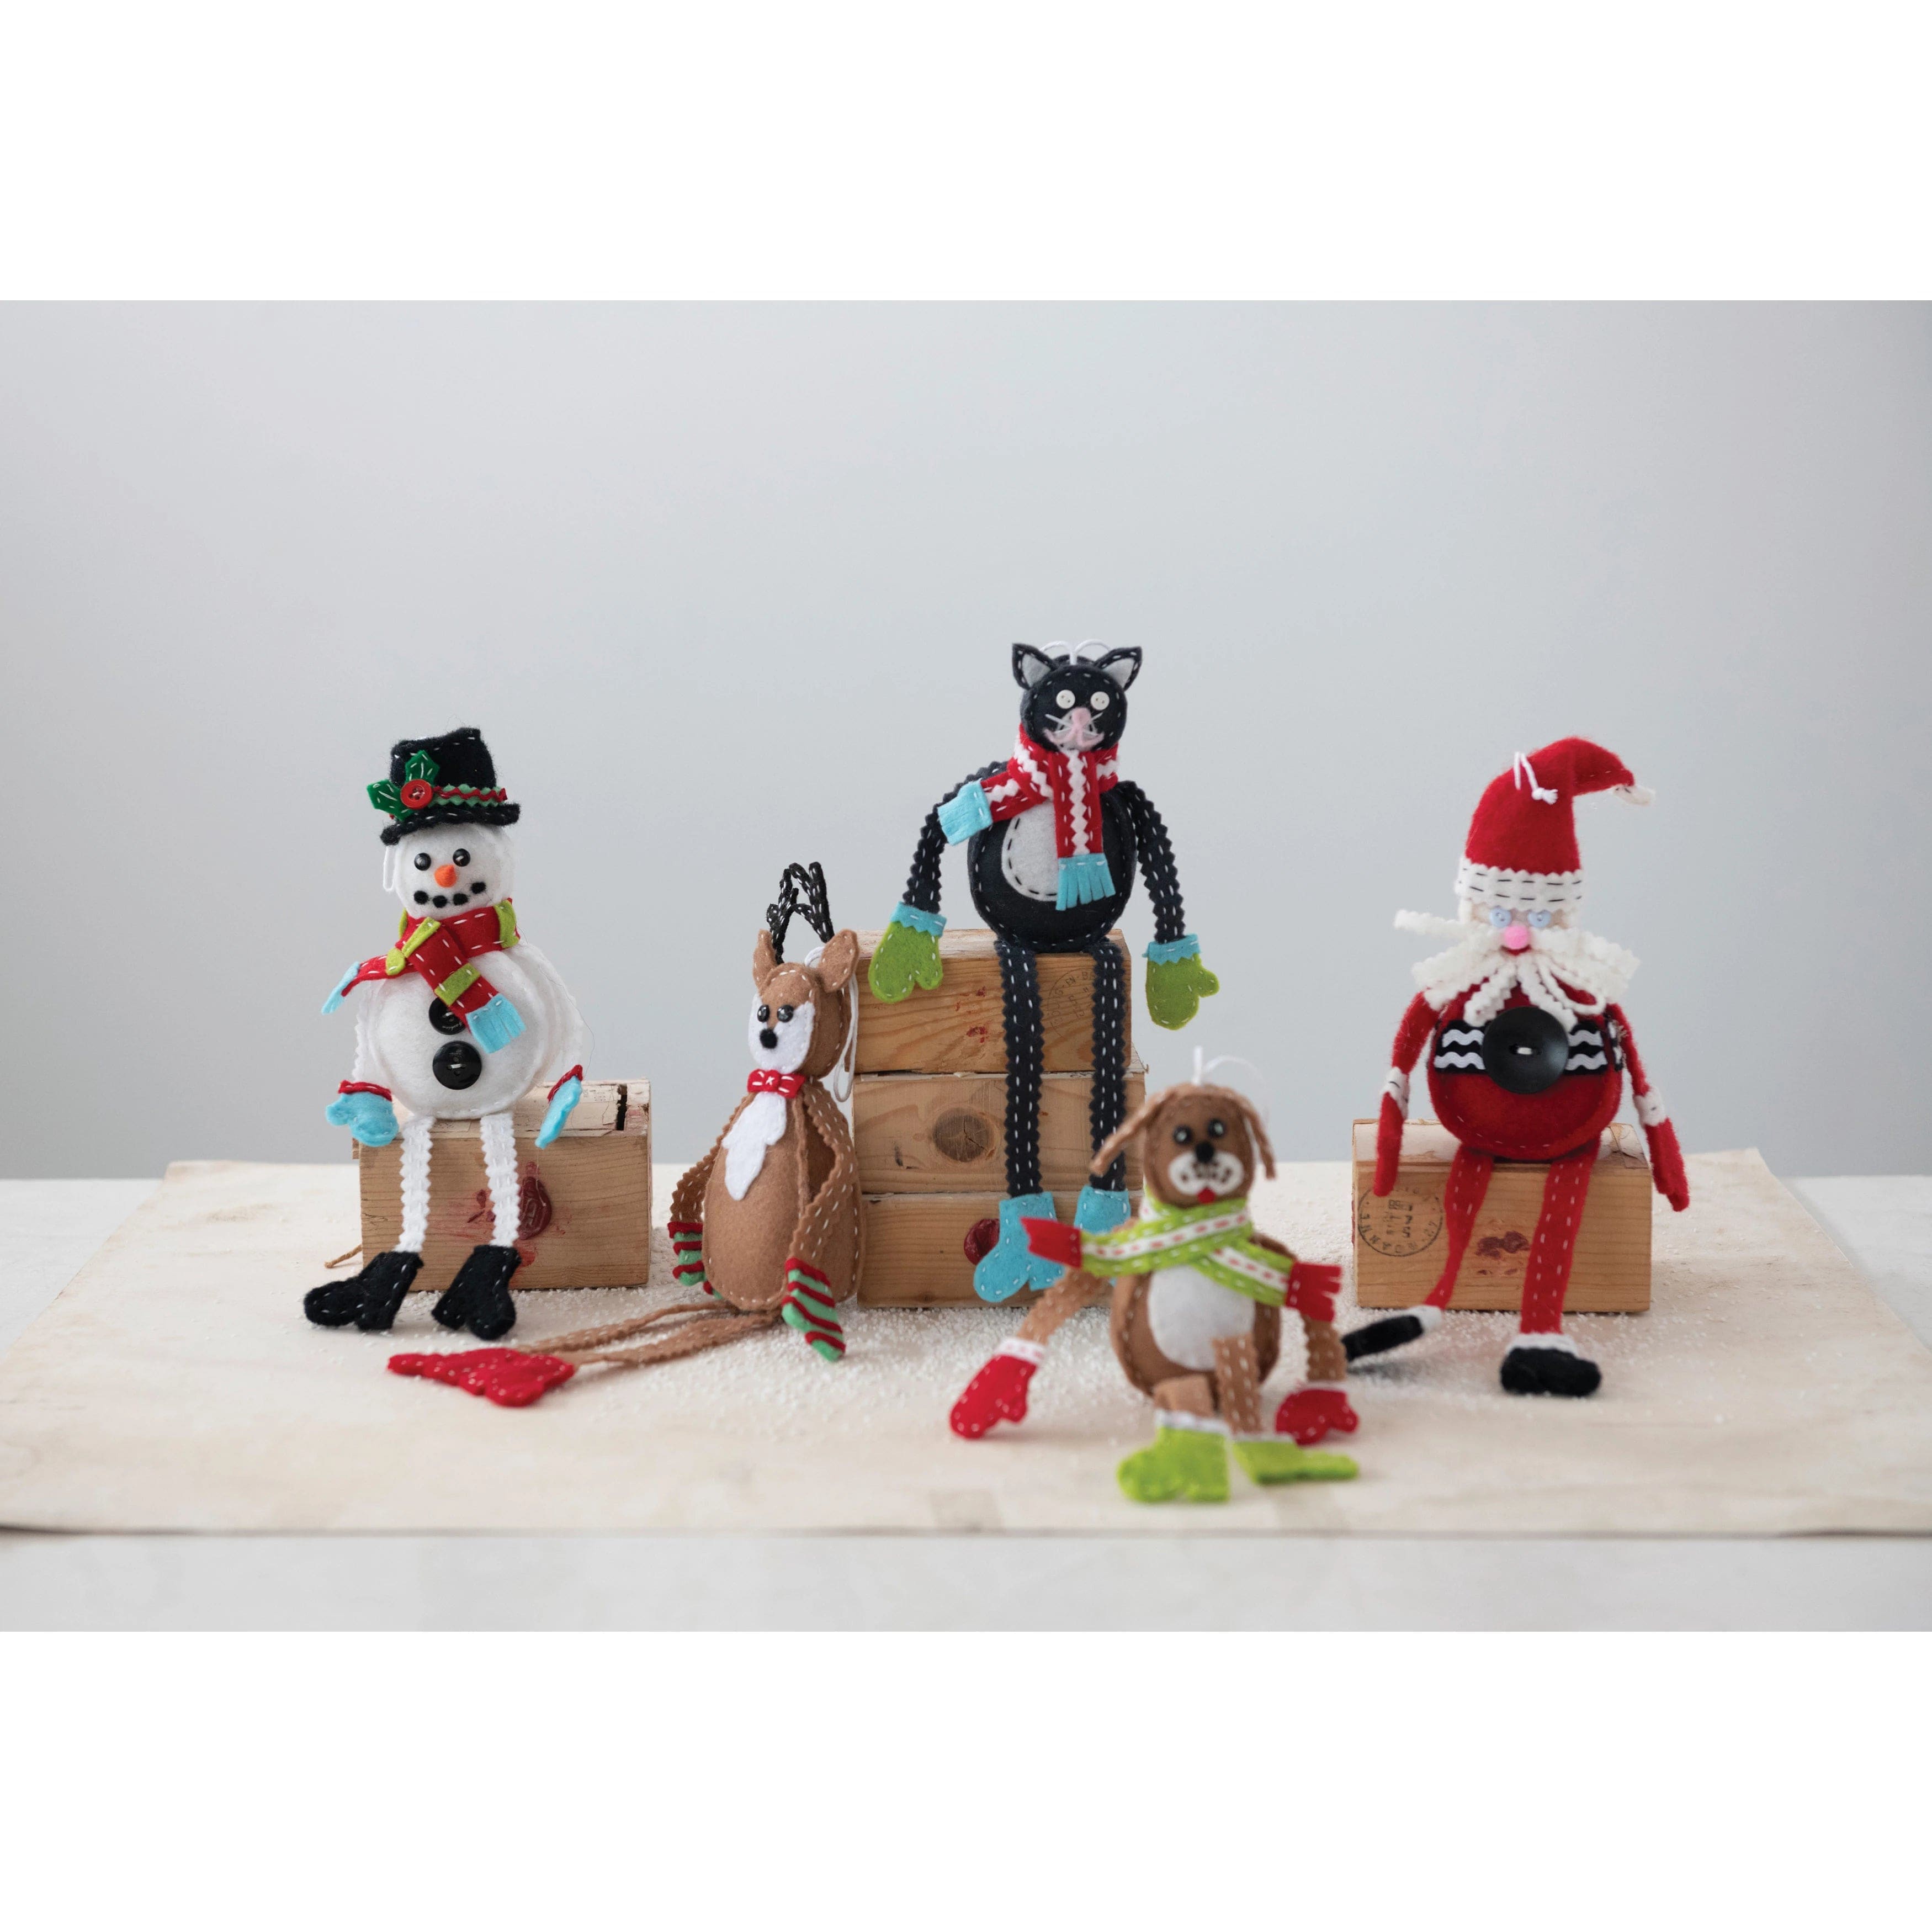 Creative Co-op Creative Co-op Felt Santa Ornament - Little Miss Muffin Children & Home